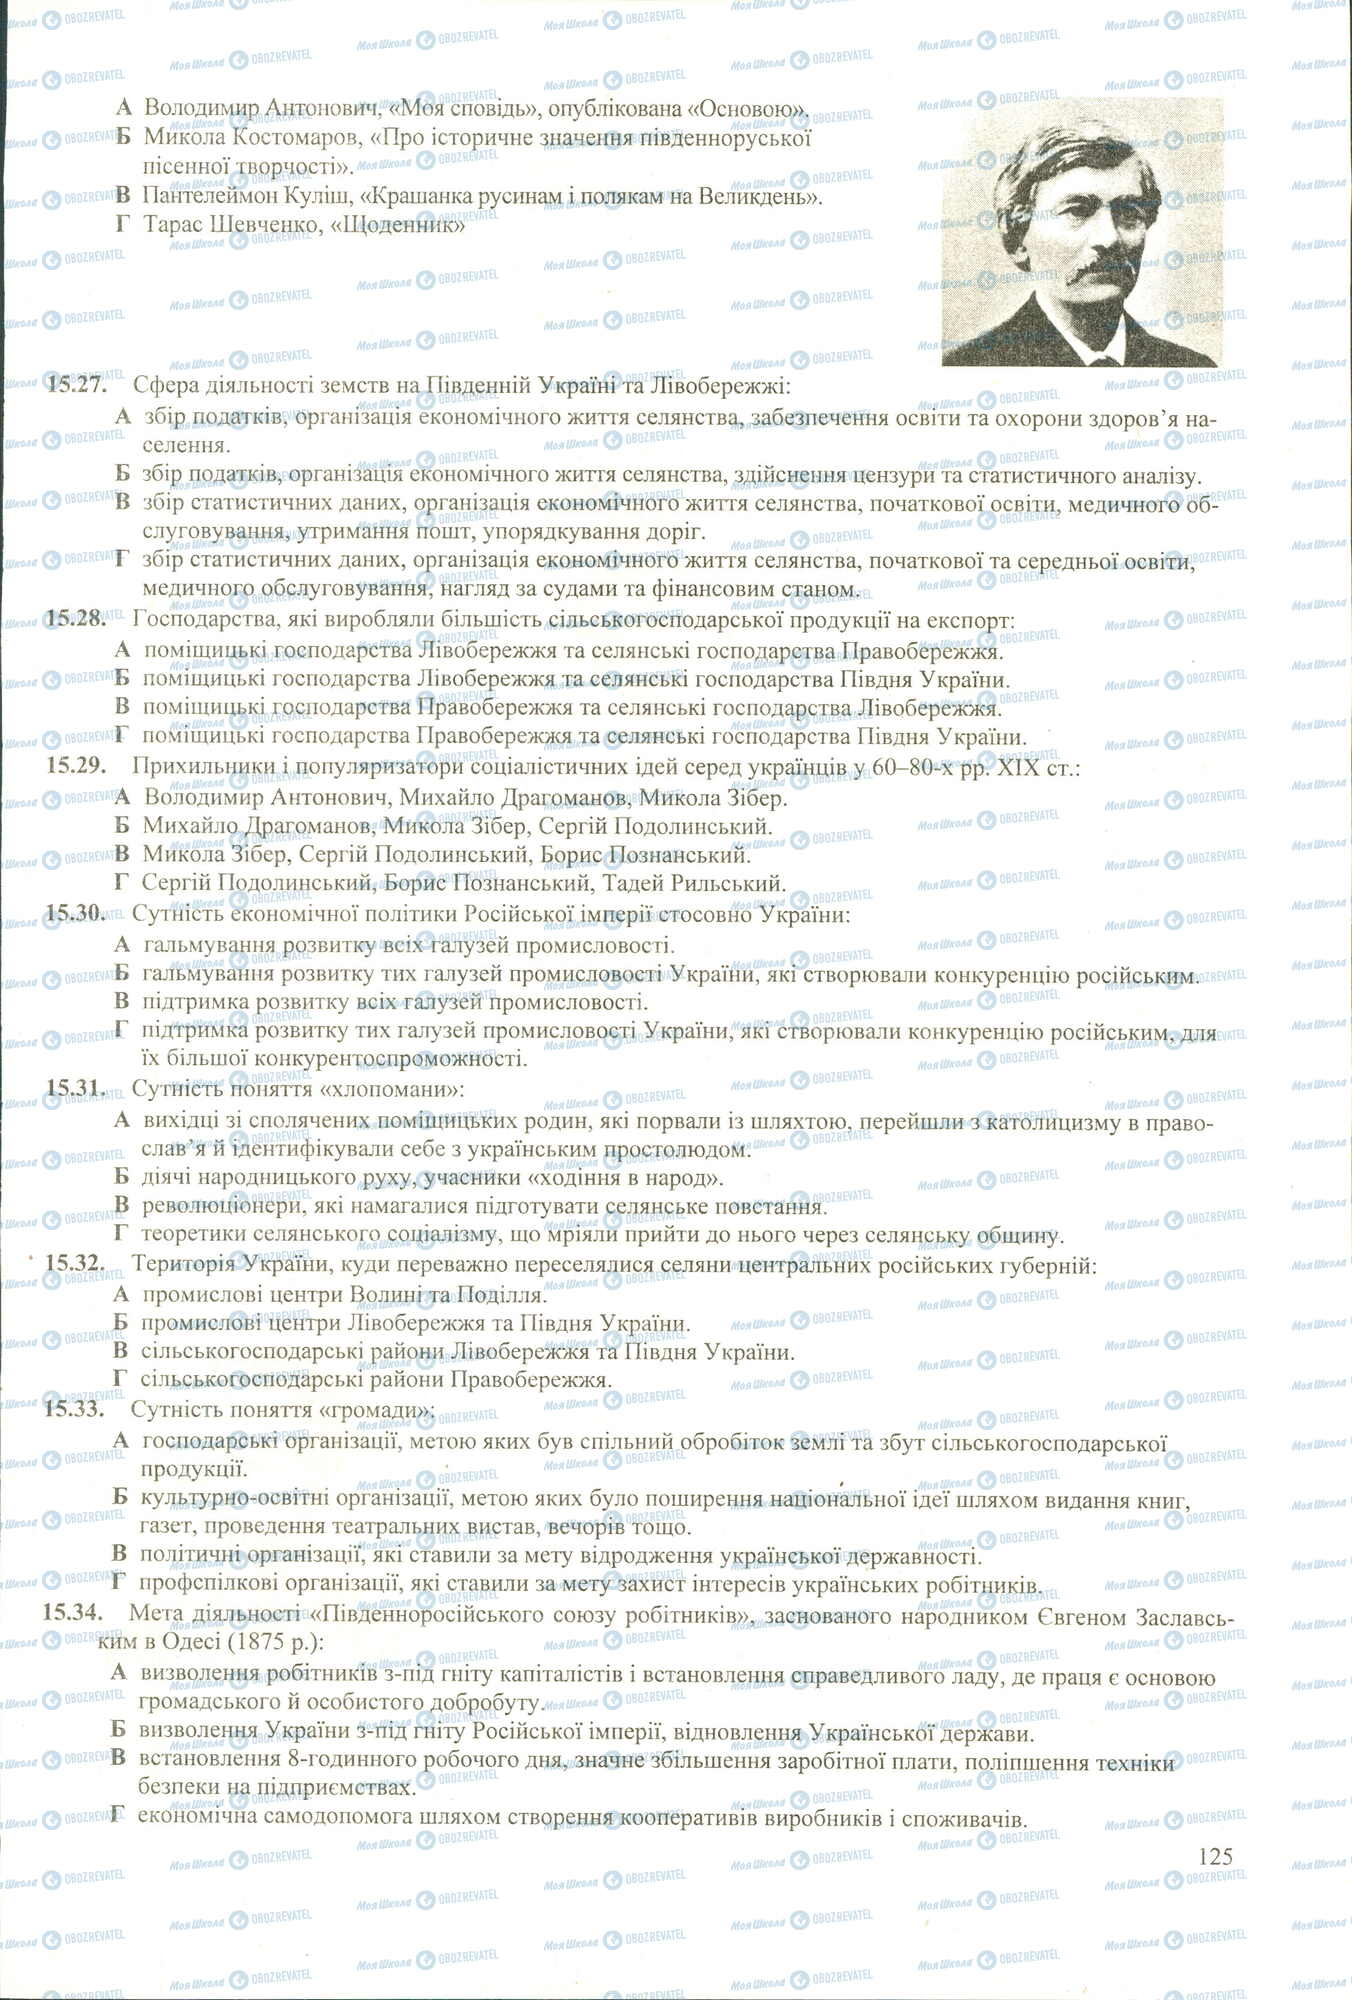 ЗНО История Украины 11 класс страница 27-34